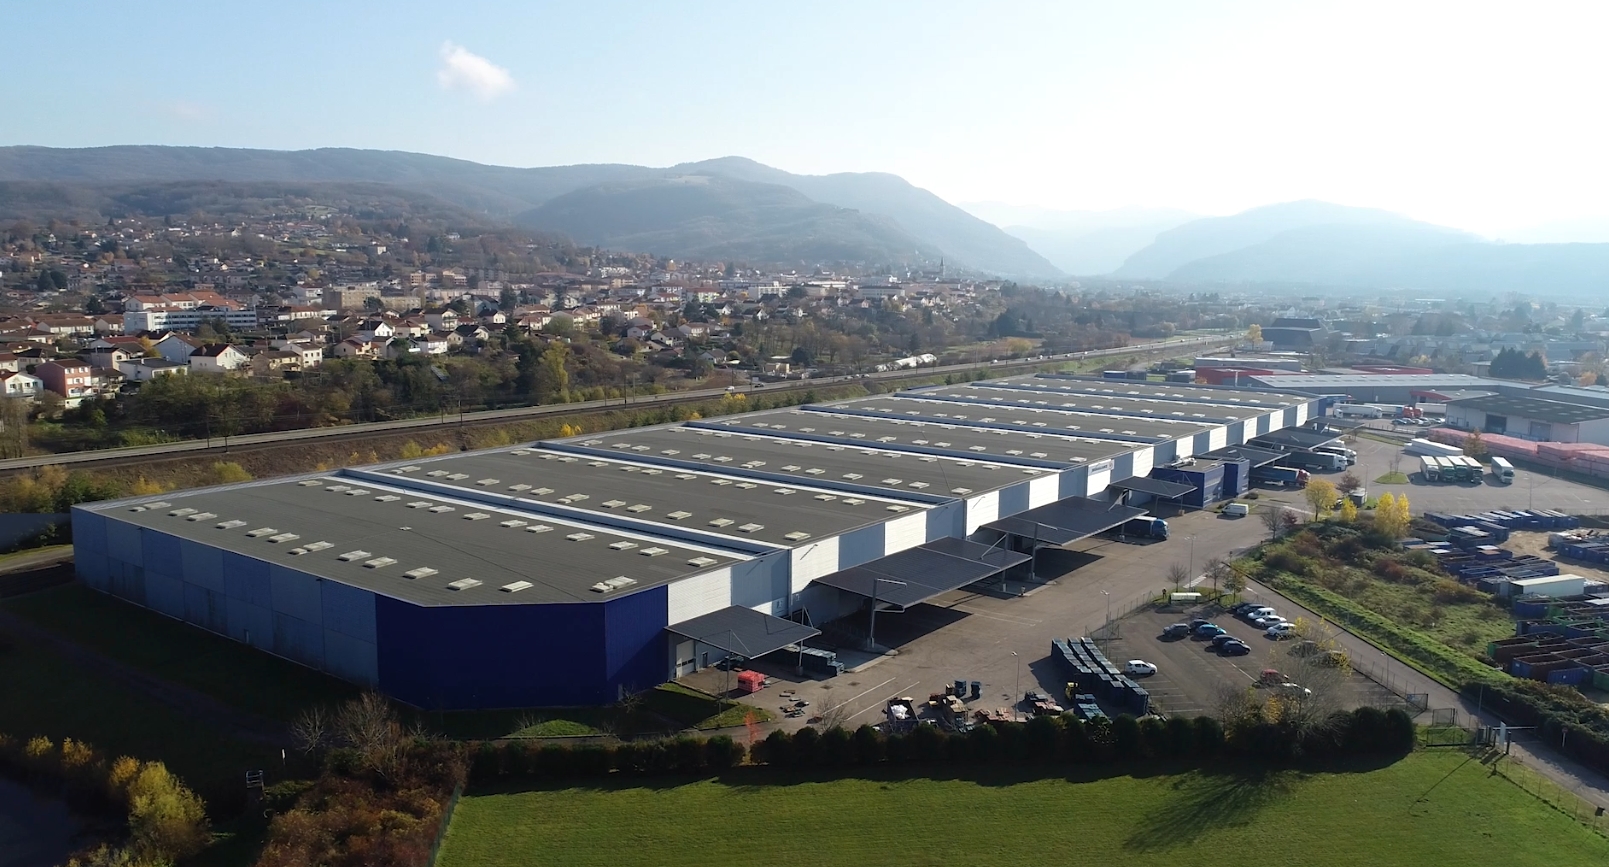 Ambérieu-en-Bugey - Aerial view of logistics building